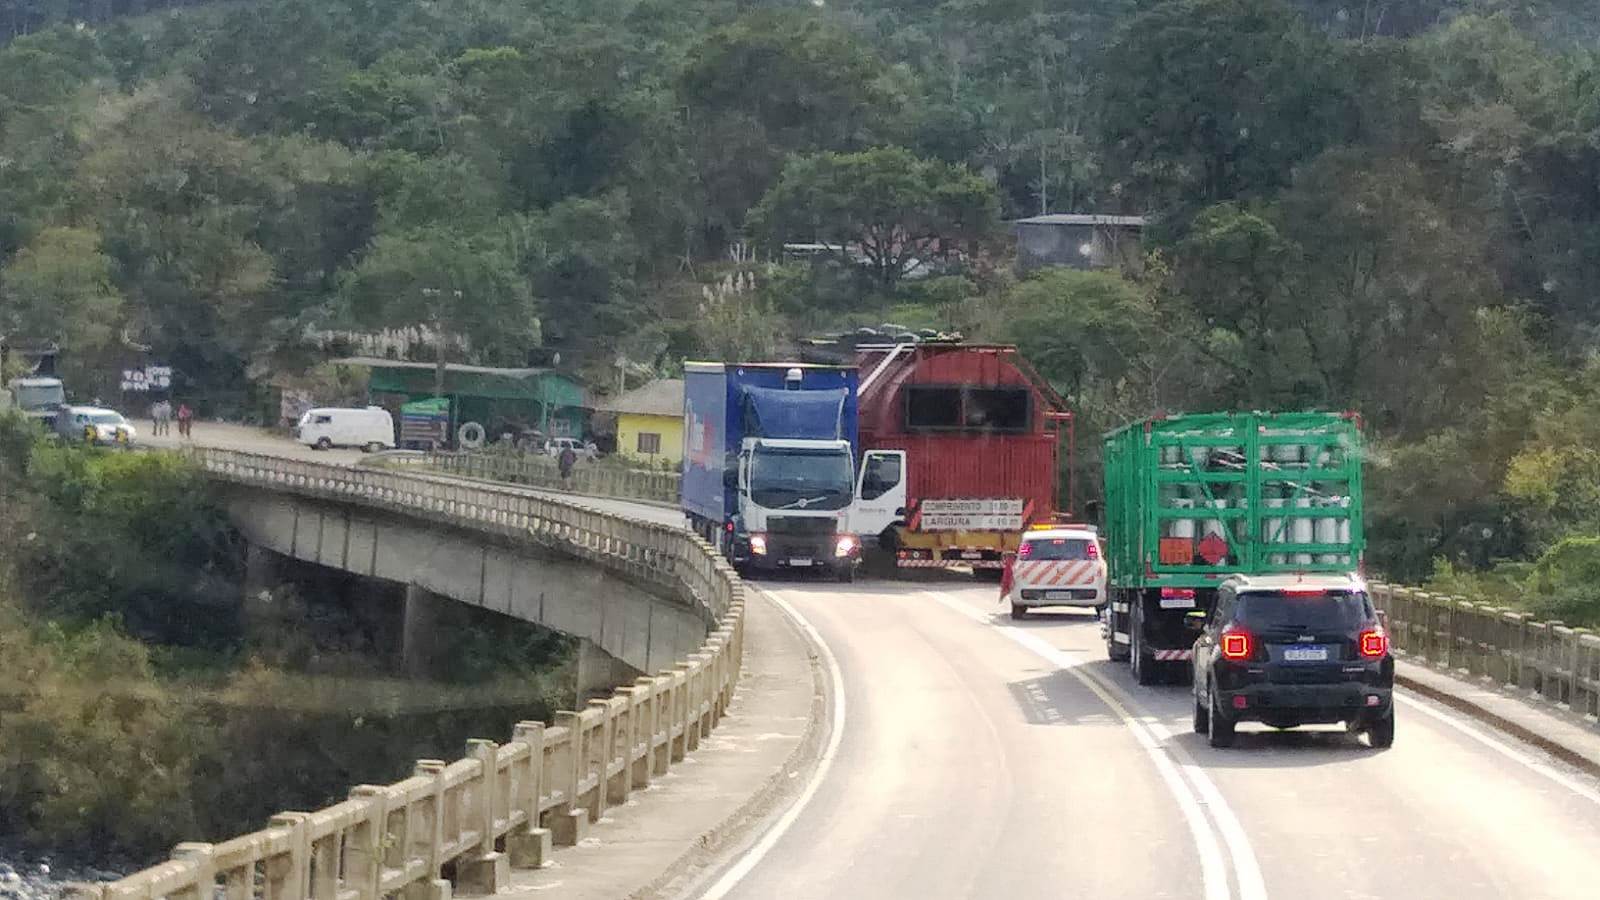 Colisão entre veículos pesados causa congestionamento intenso na ponte divisa de Ibirama/Apiúna